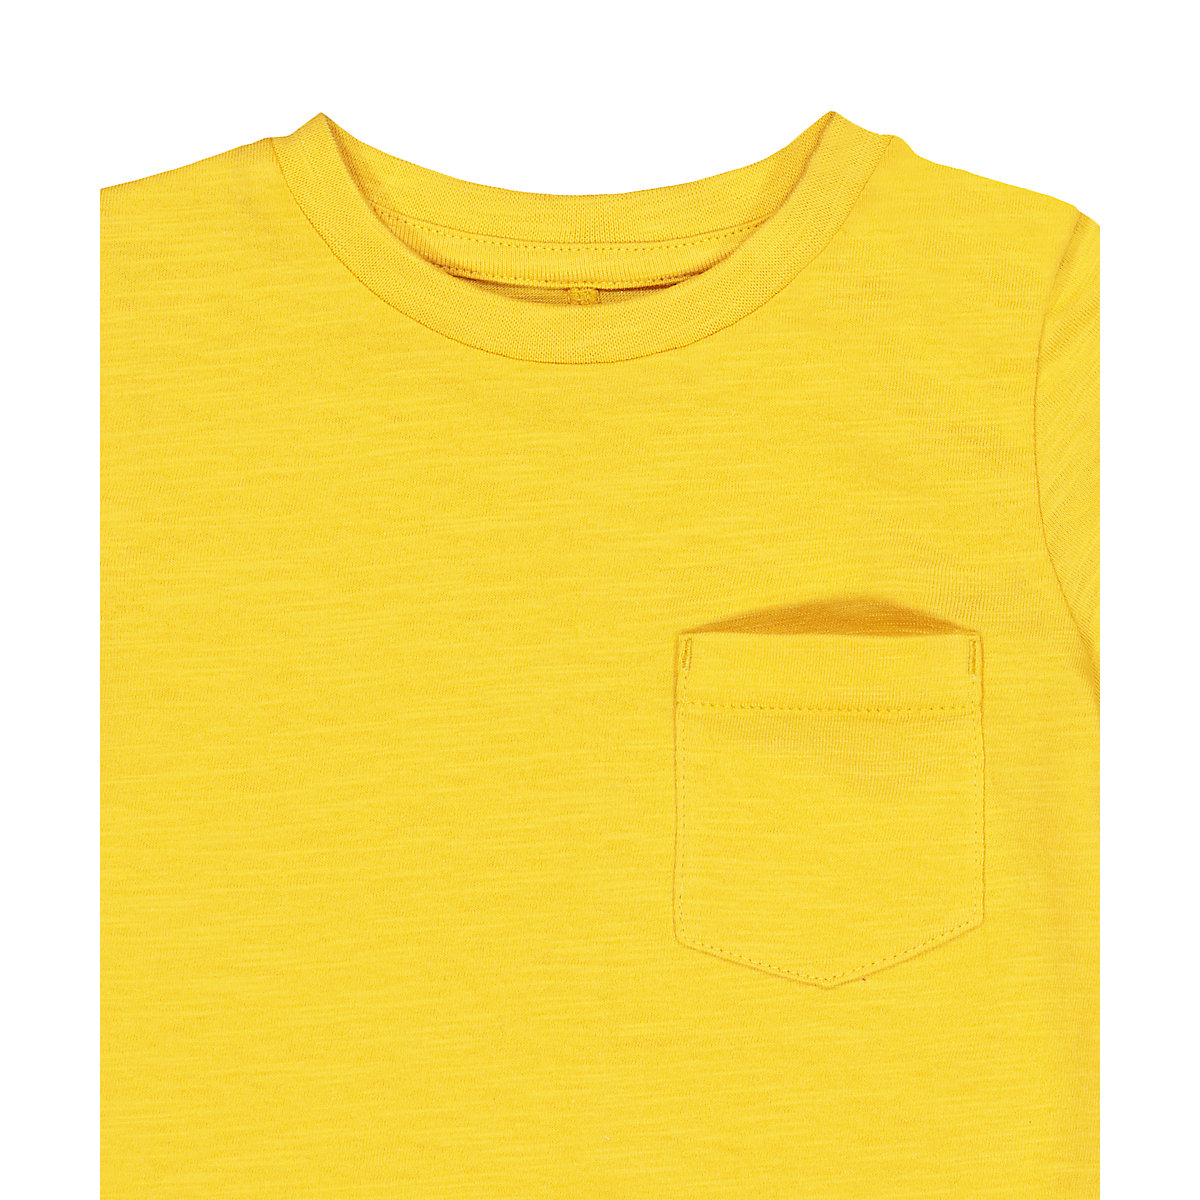 تی شرت پسرانه 27401 سایز 1.5 تا 10 سال مارک MOTHERCARE   *